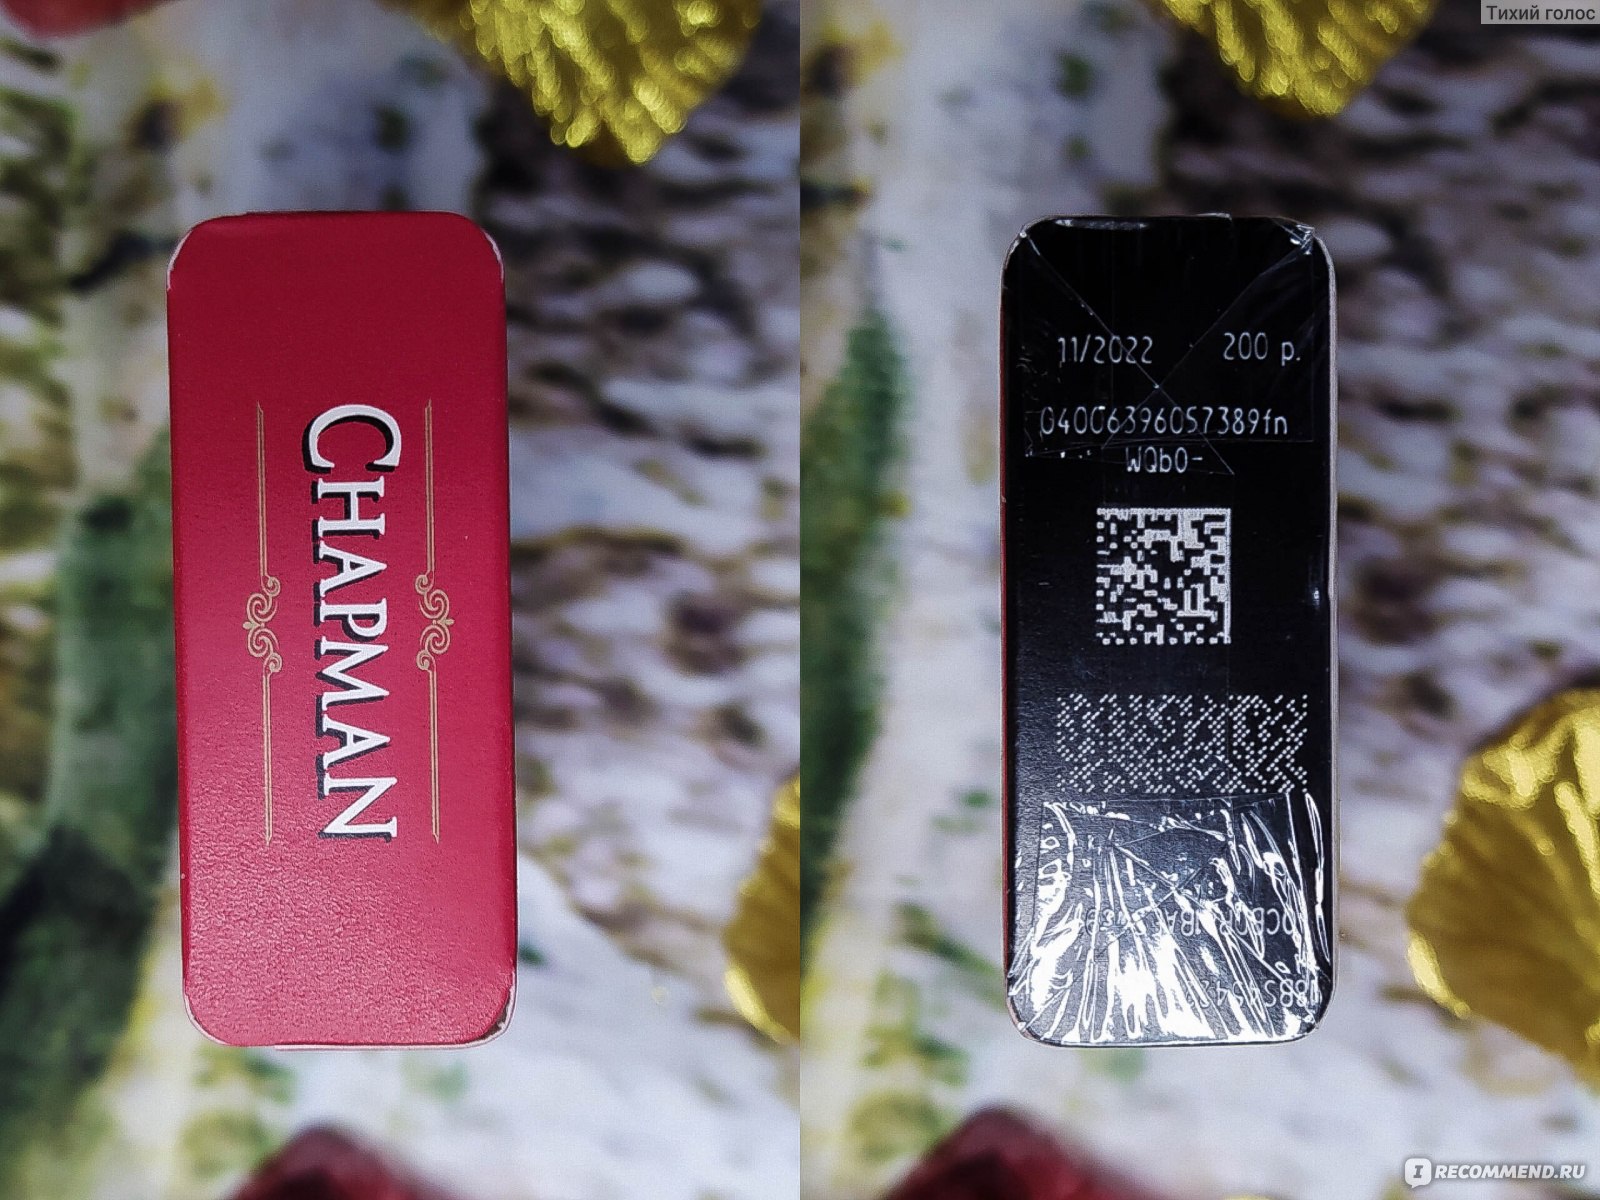 Ред компакт. Chapman Red Compact. Chapman сигареты. Chapman Red Nano (кссл). Чапман ред пирокинезис.